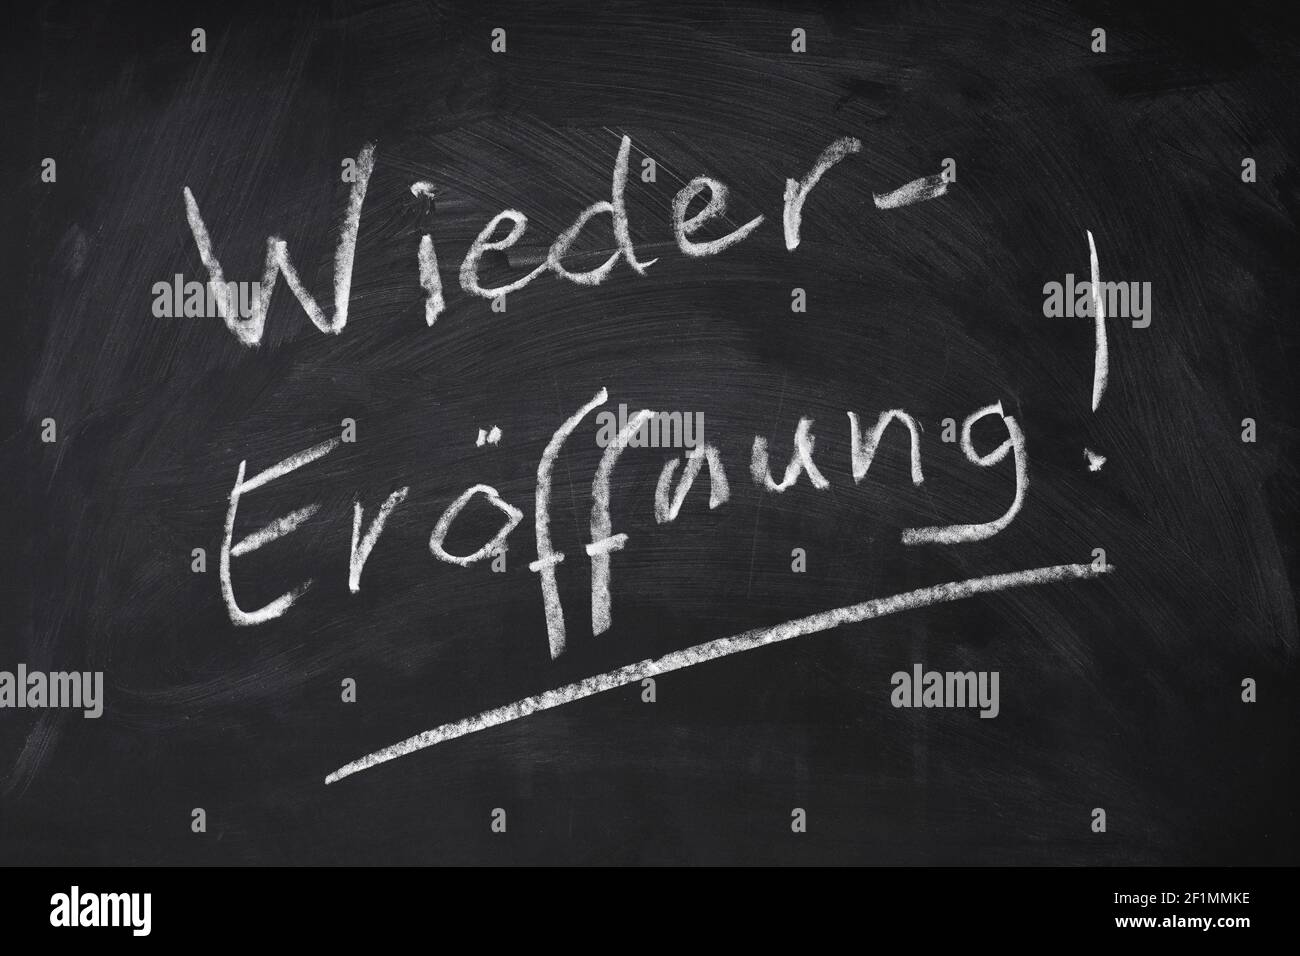 Wiedereröffnung bedeutet Wiedereröffnung auf Deutsch - handgeschriebener Text auf Tafel zeichen Stockfoto